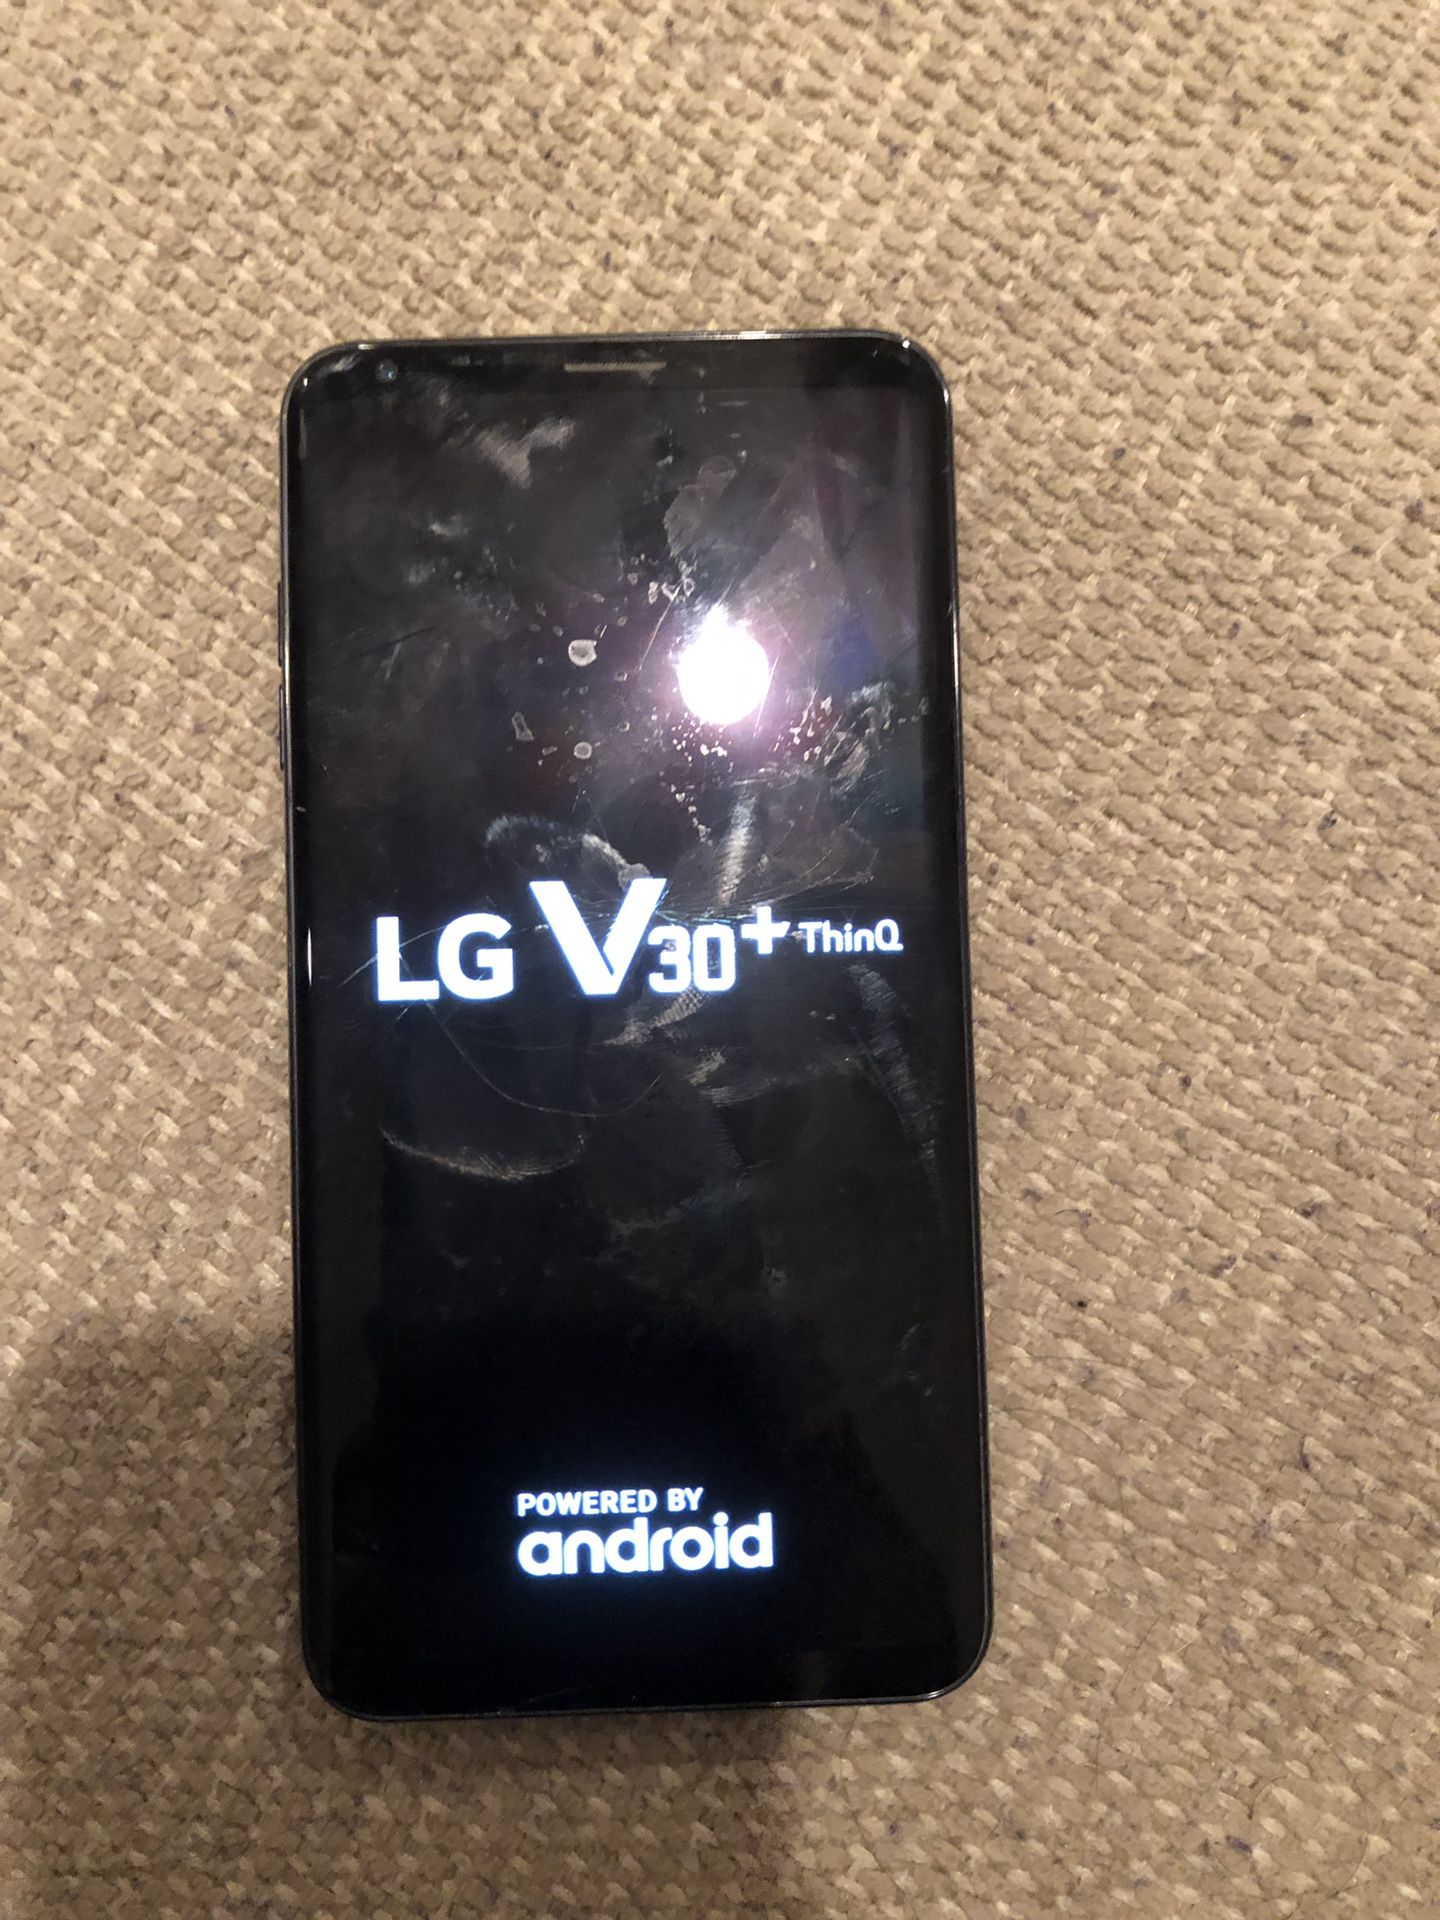 LG V30+ Phone (Sprint)